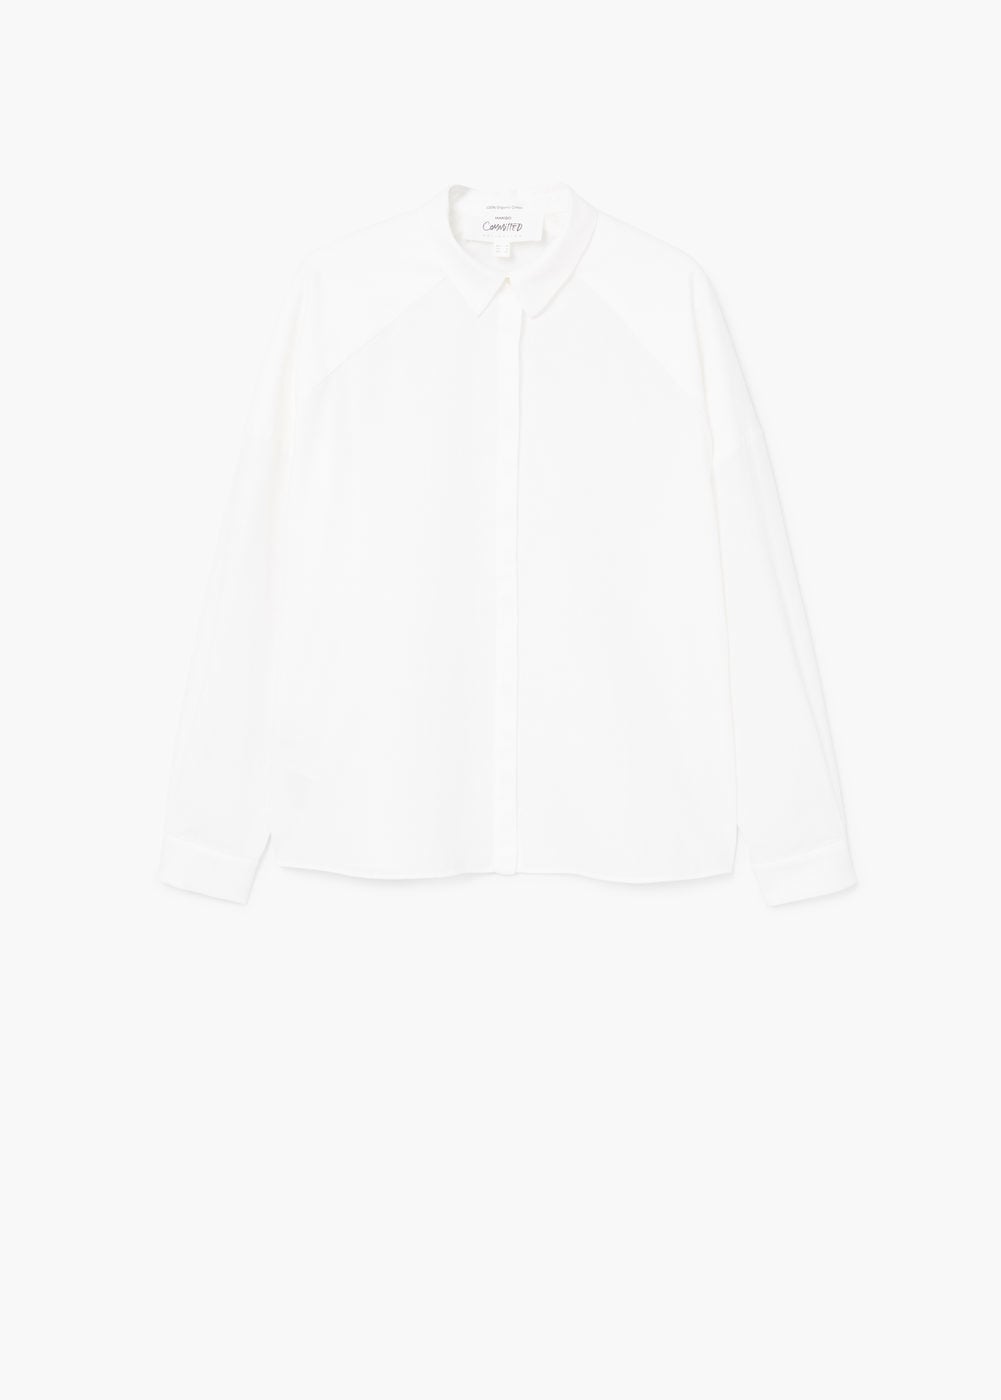 Camisa branca de algodão, Mango, €39,99